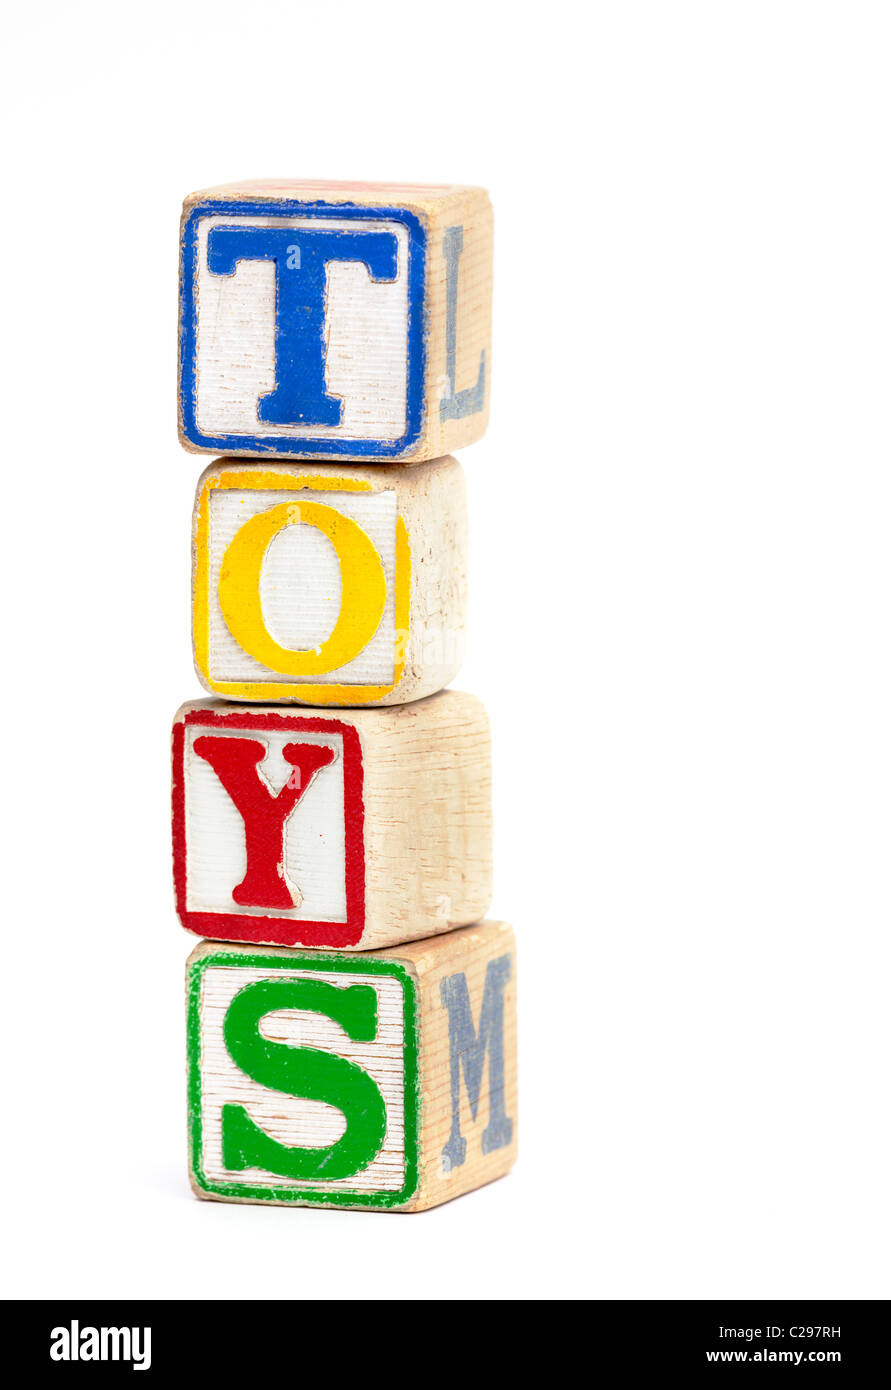 Holzspielzeug-Block gestapelt, um das Wort "Spielzeug" Stockfoto